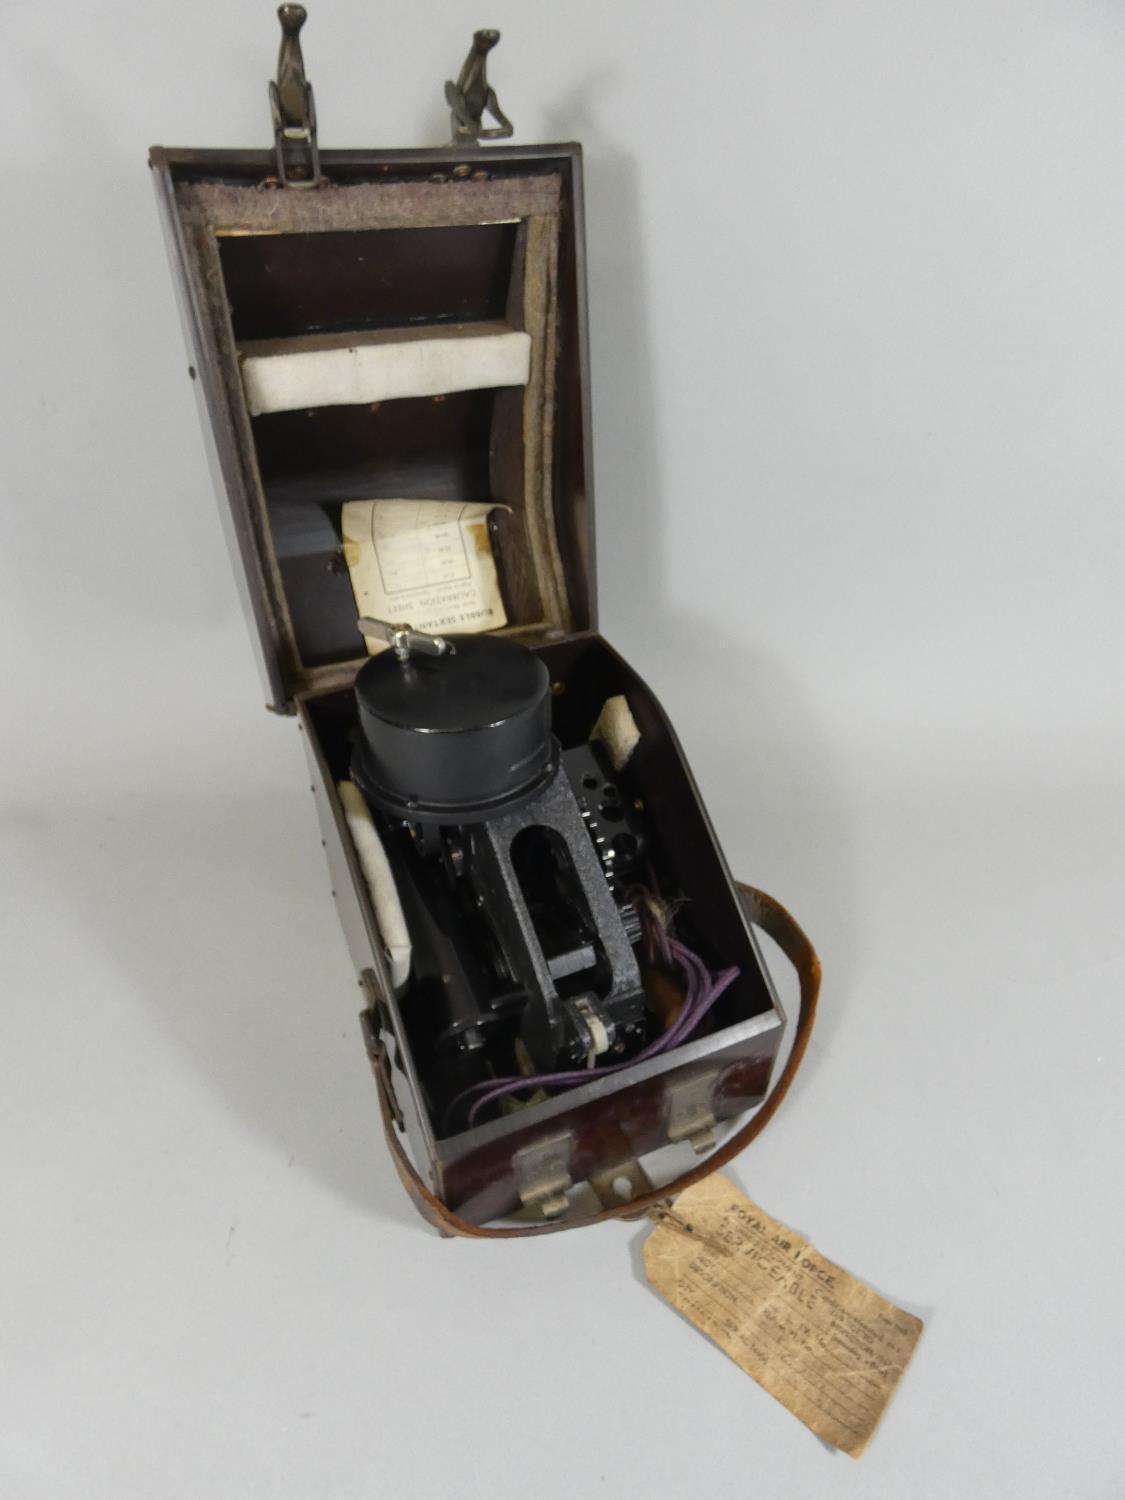 Of Royal Air Force interest; a mahogany cased bubble sextant, model MK.IX, serial No. 3478/44,